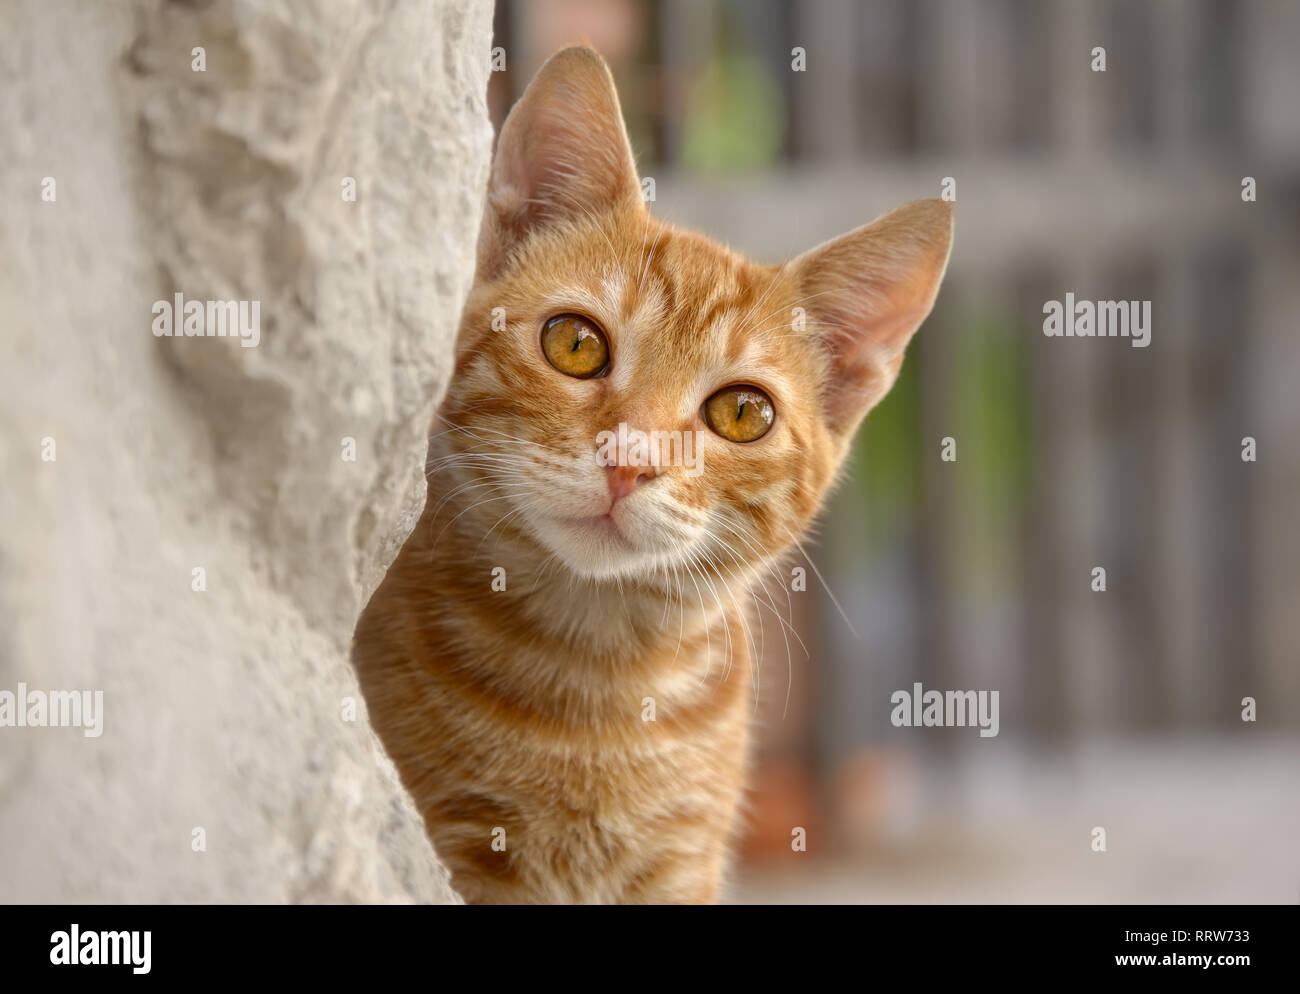 Carino Rosso tabby gattino il peering curiosamente da dietro un muro, un close-up verticale Foto Stock